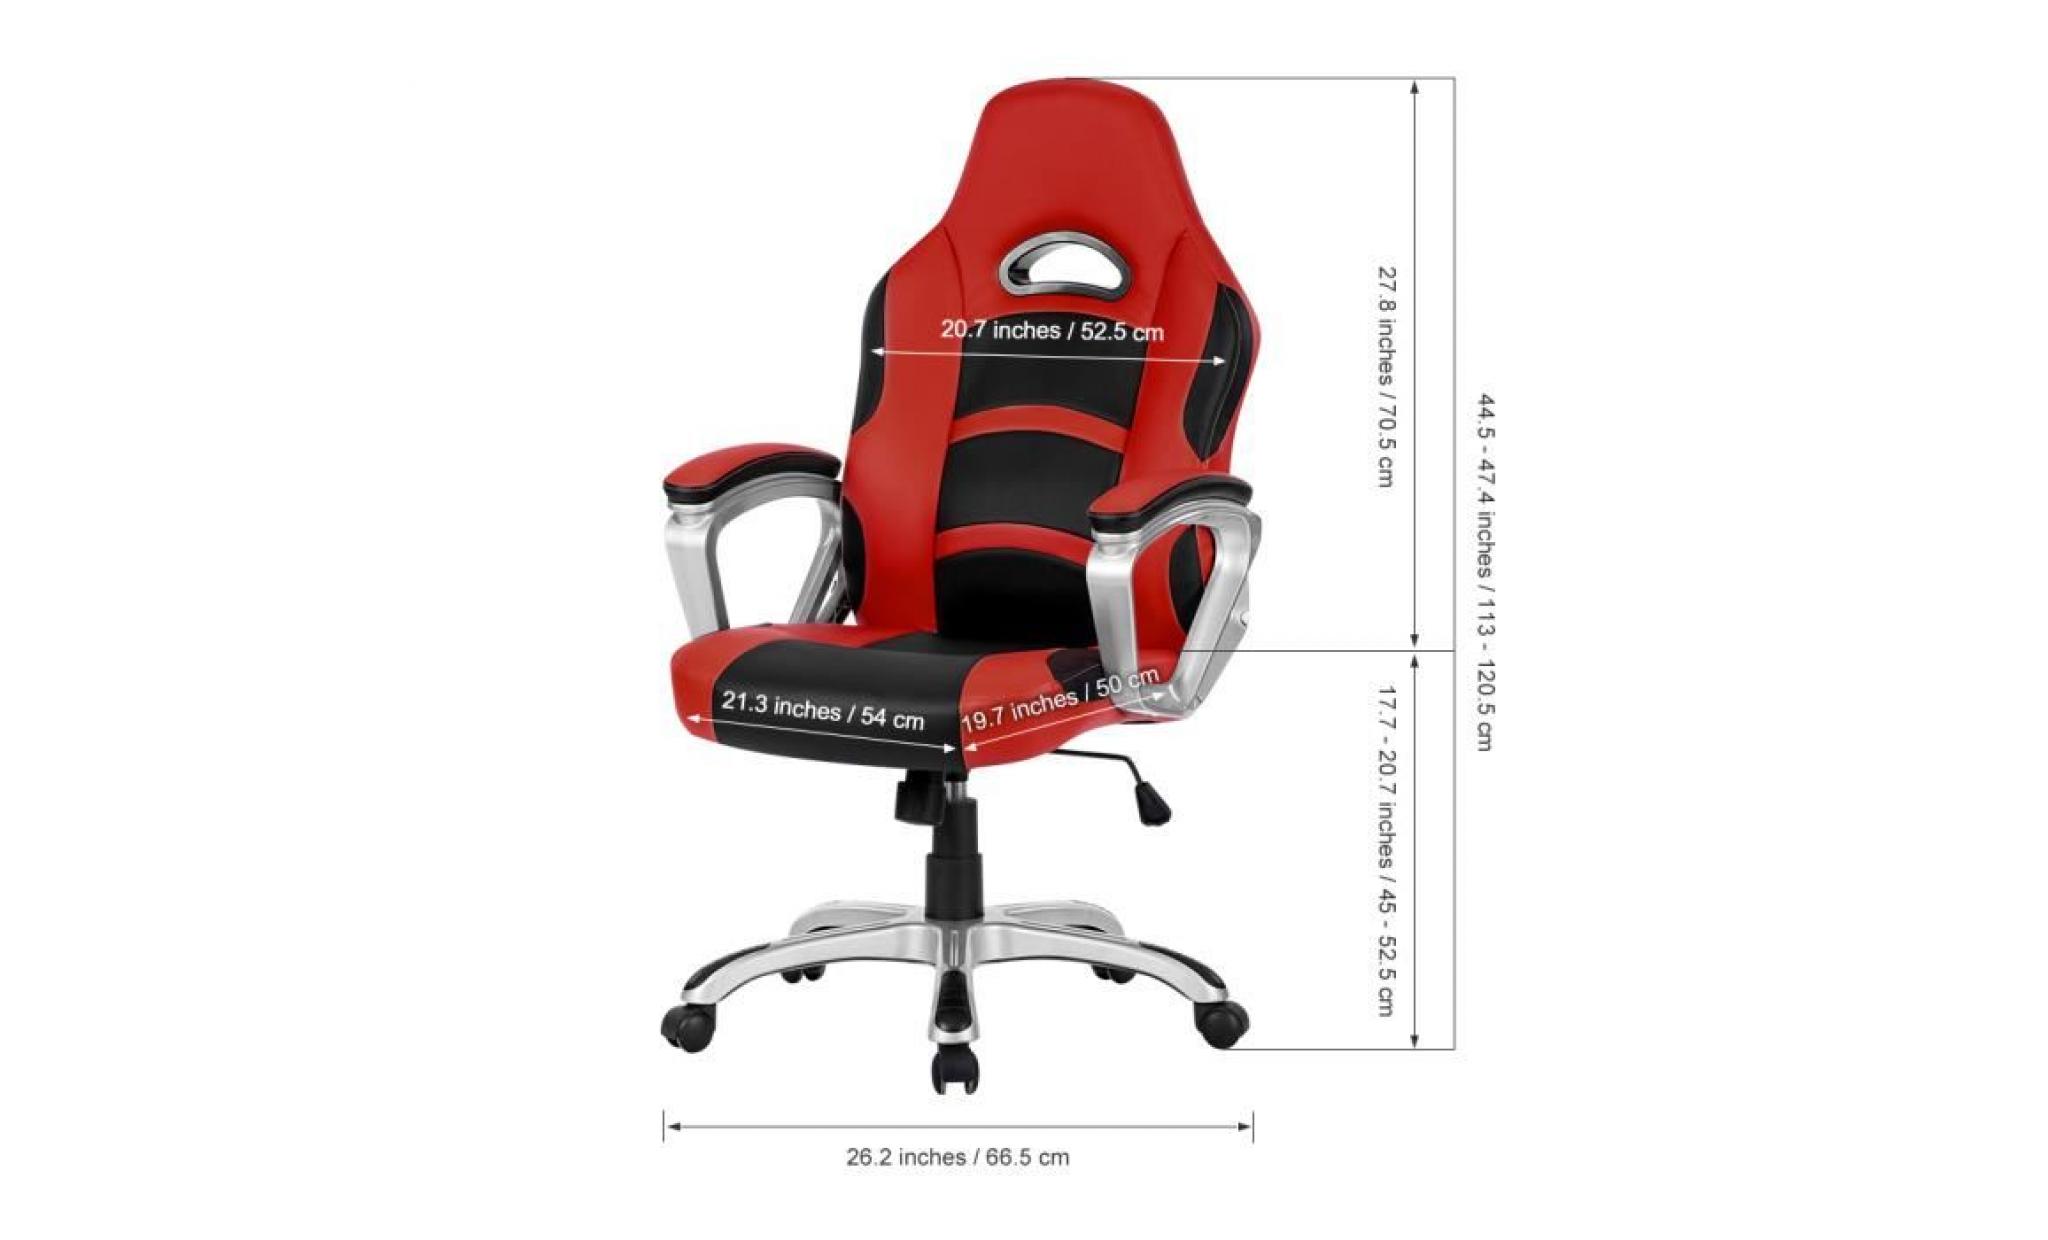 chaise de bureau langria ergonomique chaise dossier haut imitation cuir racing style jeux bureau faciles